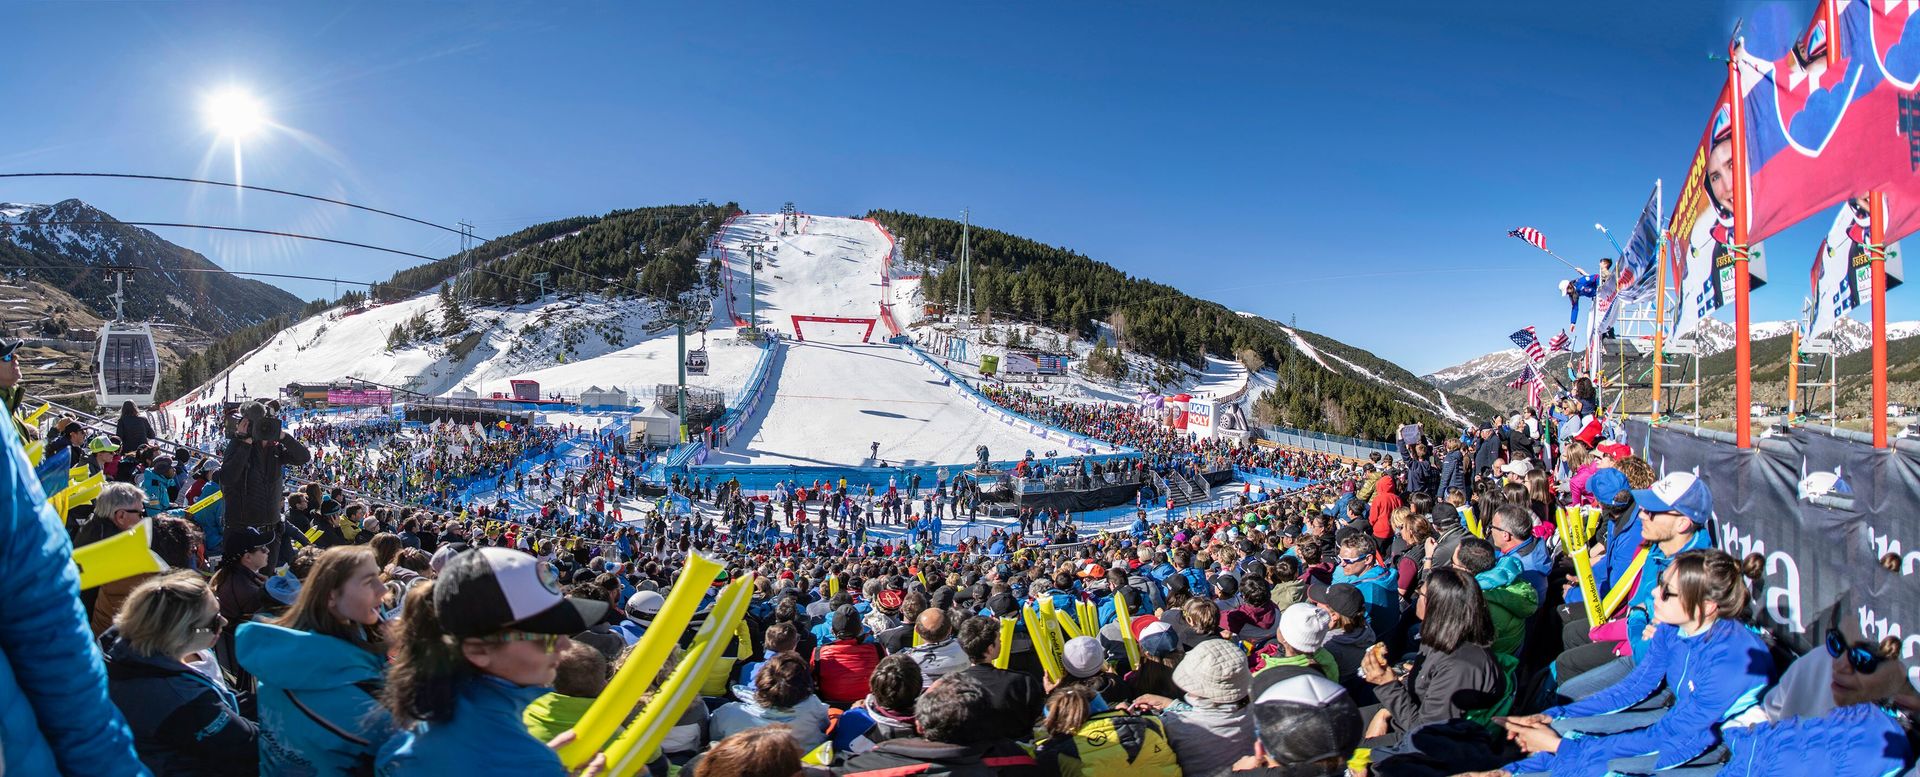 Linea de meta copa del mundo esqui alpino grandvalira soldeu el tarter